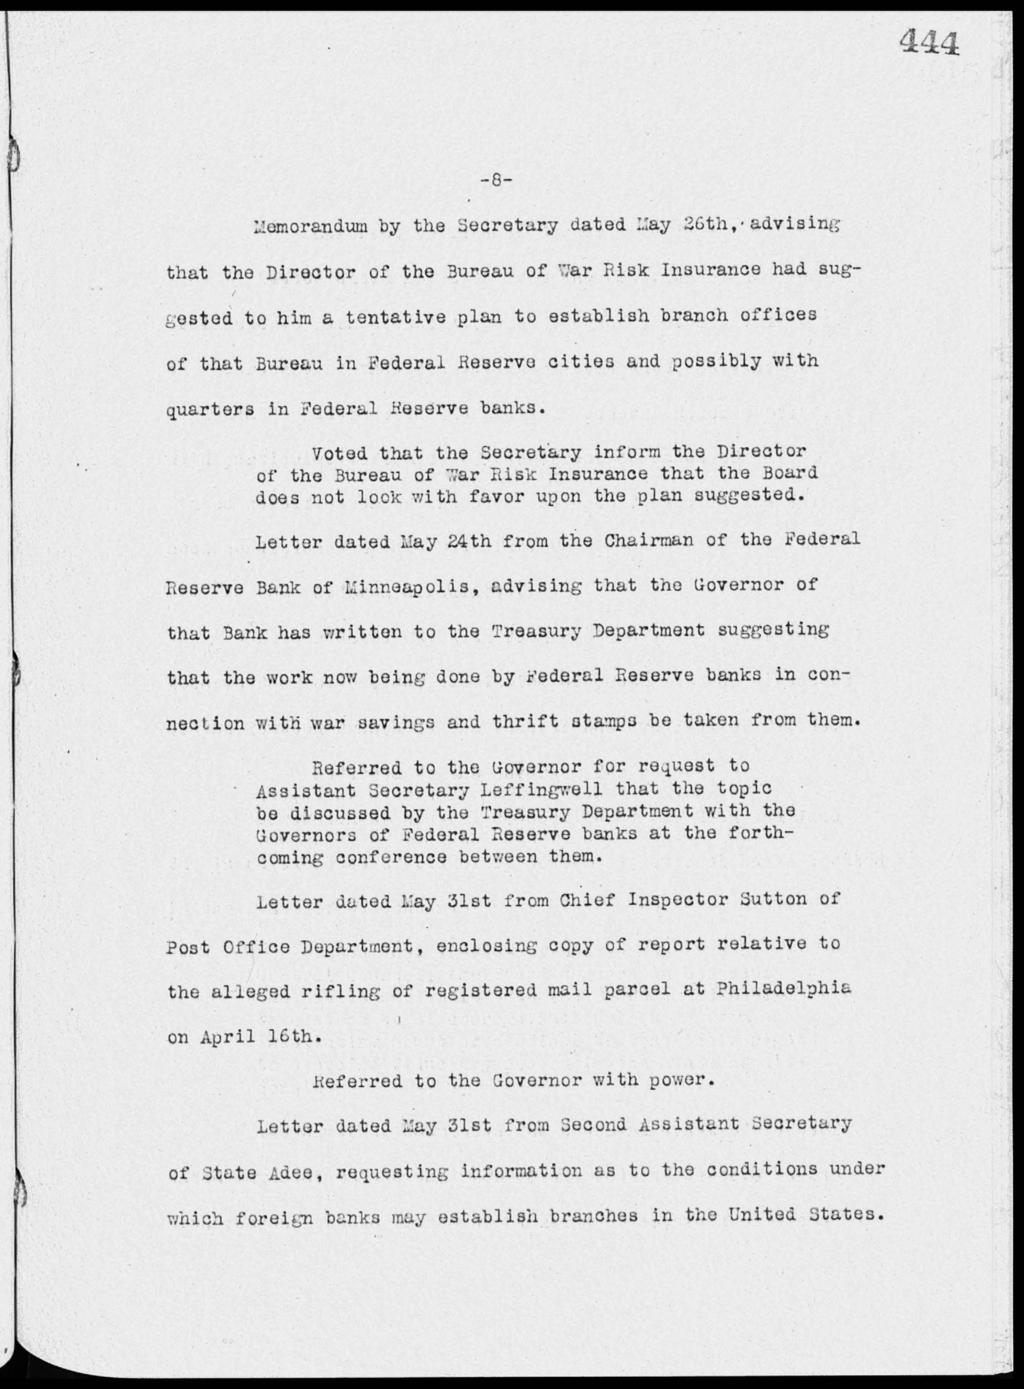 444-8- Memorandum by the Secretary dated May 26th,.